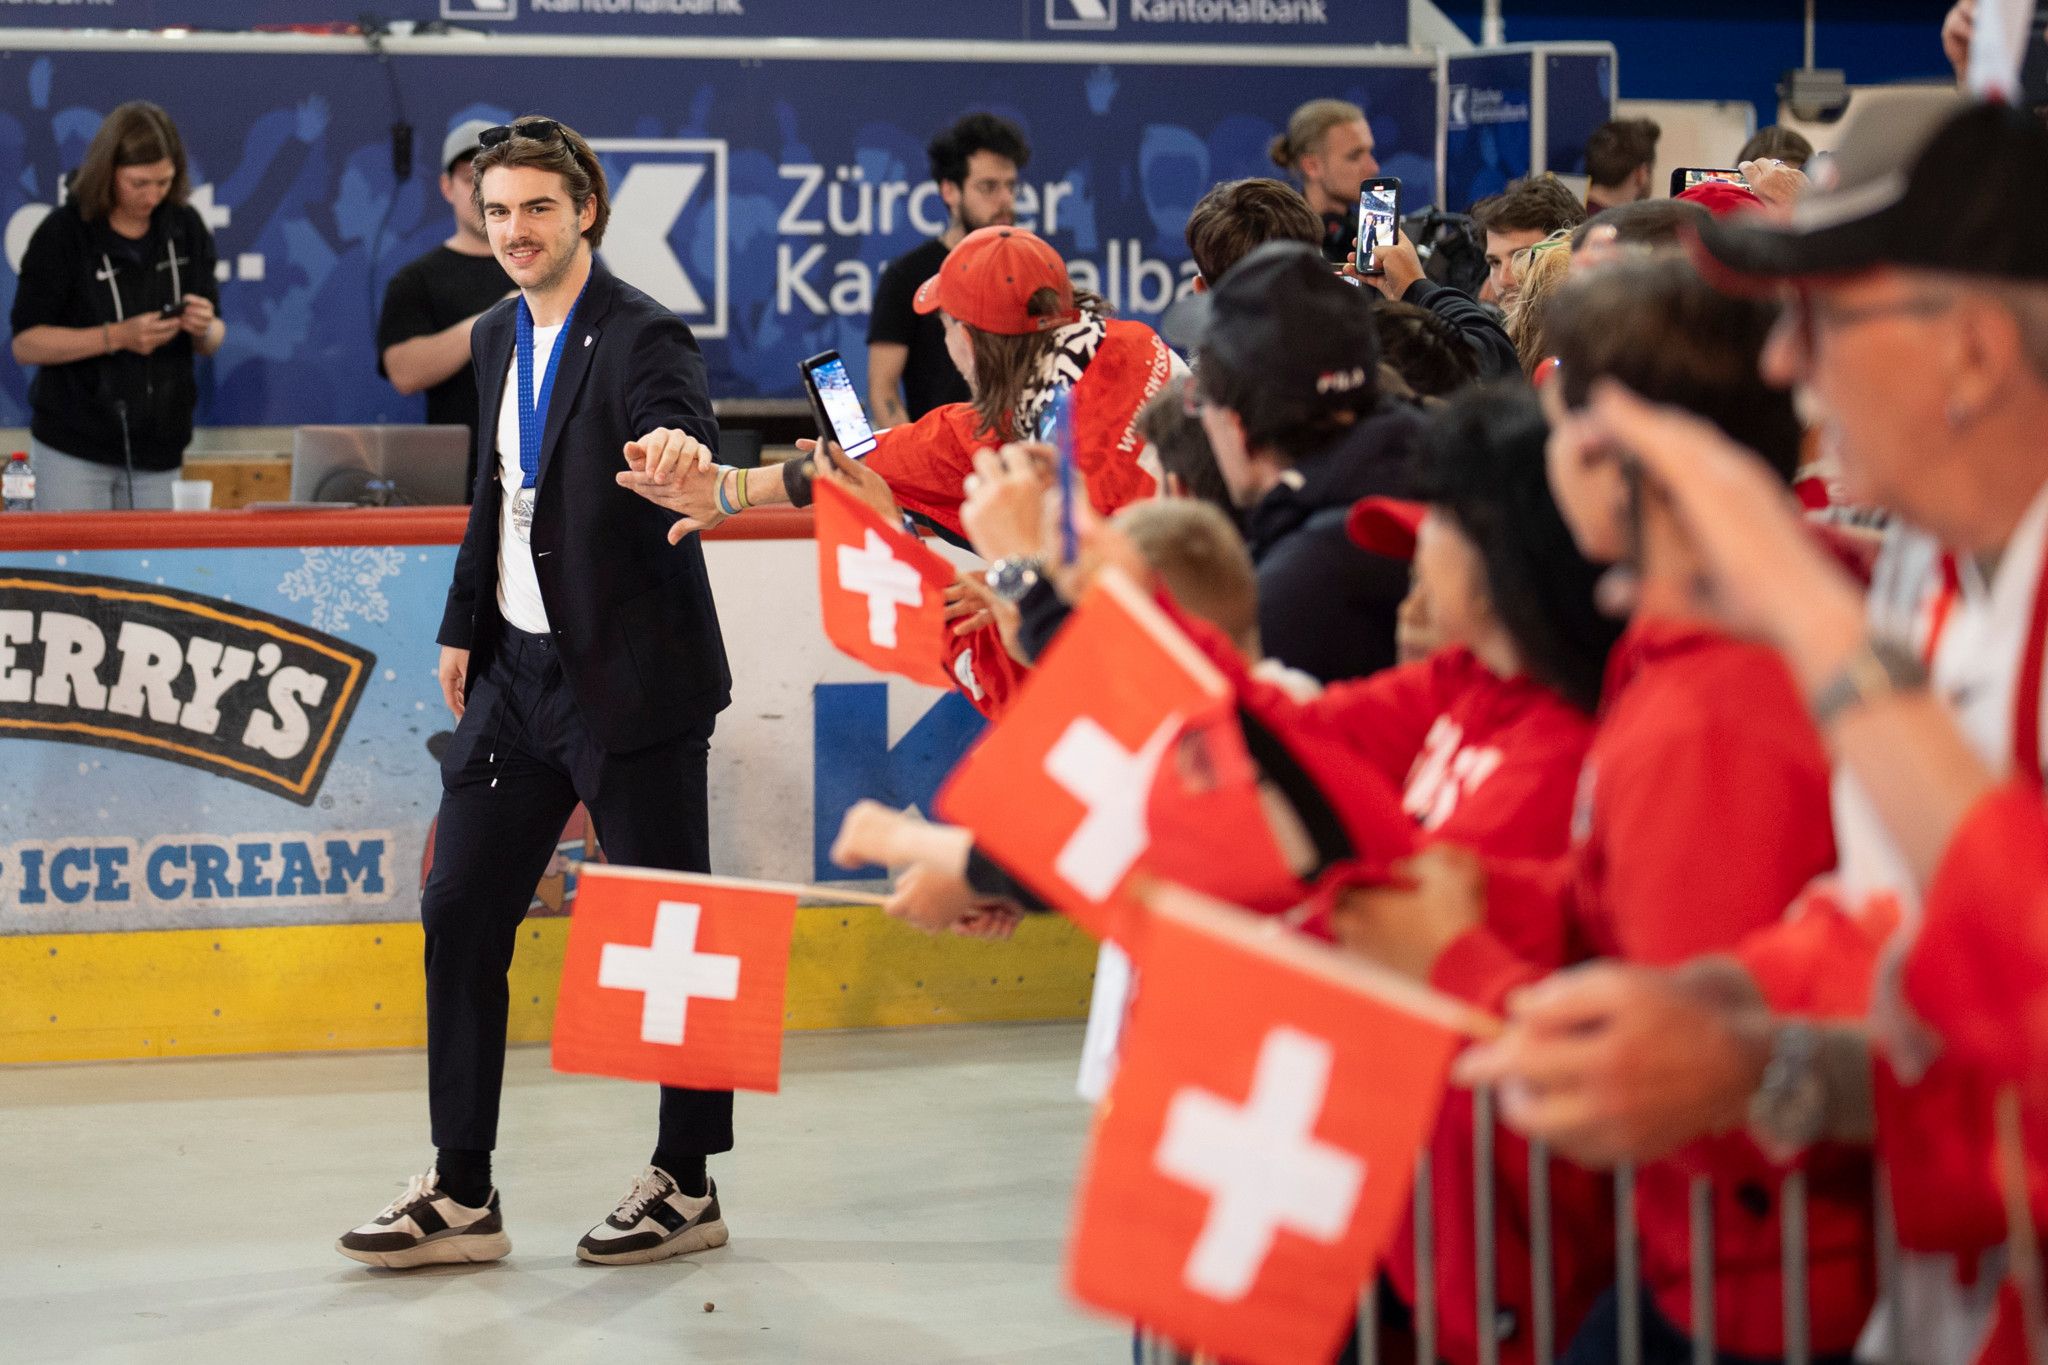 Les fans ont réservé un bel accueil aux médaillés suisses